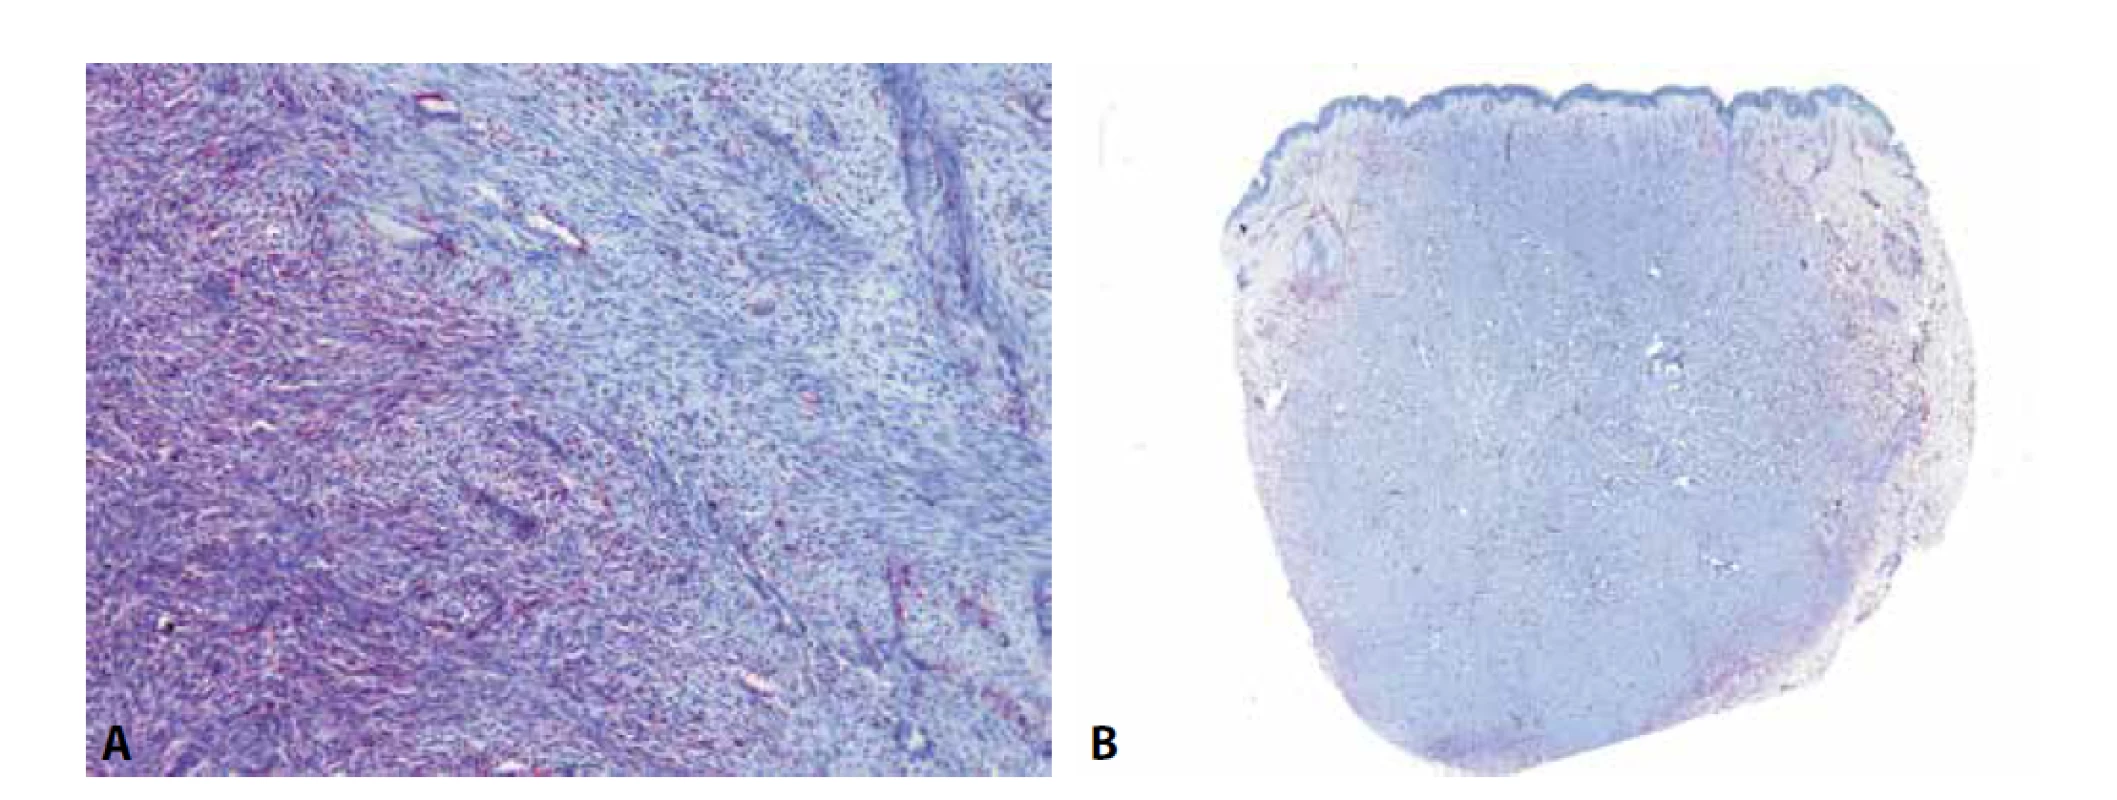 U dermatofibrosarcoma protuberans (DFSP) je možné pozorovat difúzní expresi CD34 v low-grade oblastech (A - vlevo) a její ztrátu v převážně
fascikulárně rostoucích high-grade oblastech (A – vpravo). Ke ztrátě exprese v těchto partiích dochází ve zhruba polovině případů a může
být nápomocná ke stanovení diagnózy fibrosarkomu ex DFSP. Protilátka CD34 je též užitečná k odlišení DFSP od benigního fibrózního histiocytomu.
U fibrózních histiocytomů, zejména pak u jeho celulárních forem, je exprese CD34 někdy také přítomna, ale téměř vždy pouze na periferii
tumoru, zatímco v jeho centru, na rozdíl od DFSP, chybí (B).